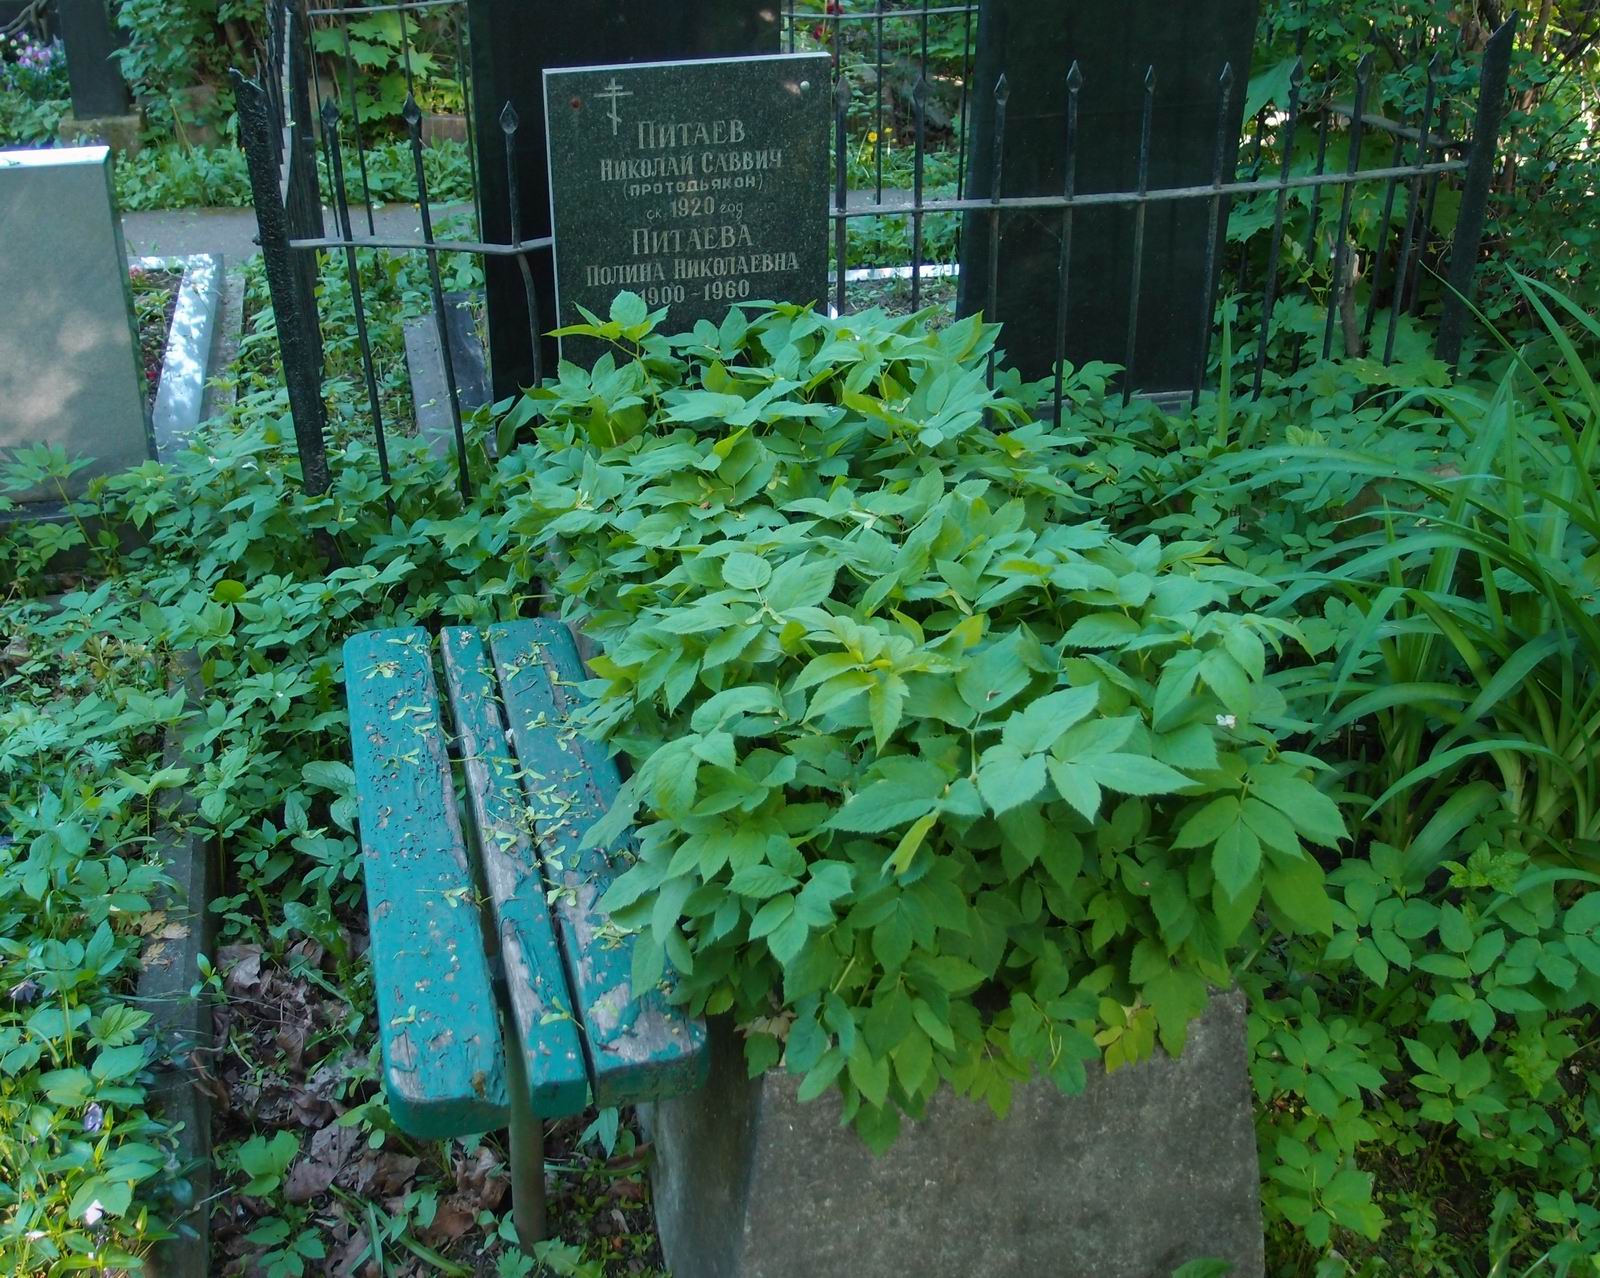 Памятник на могиле Питаева Н.С. (?-1920), на Новодевичьем кладбище (2-36-16).